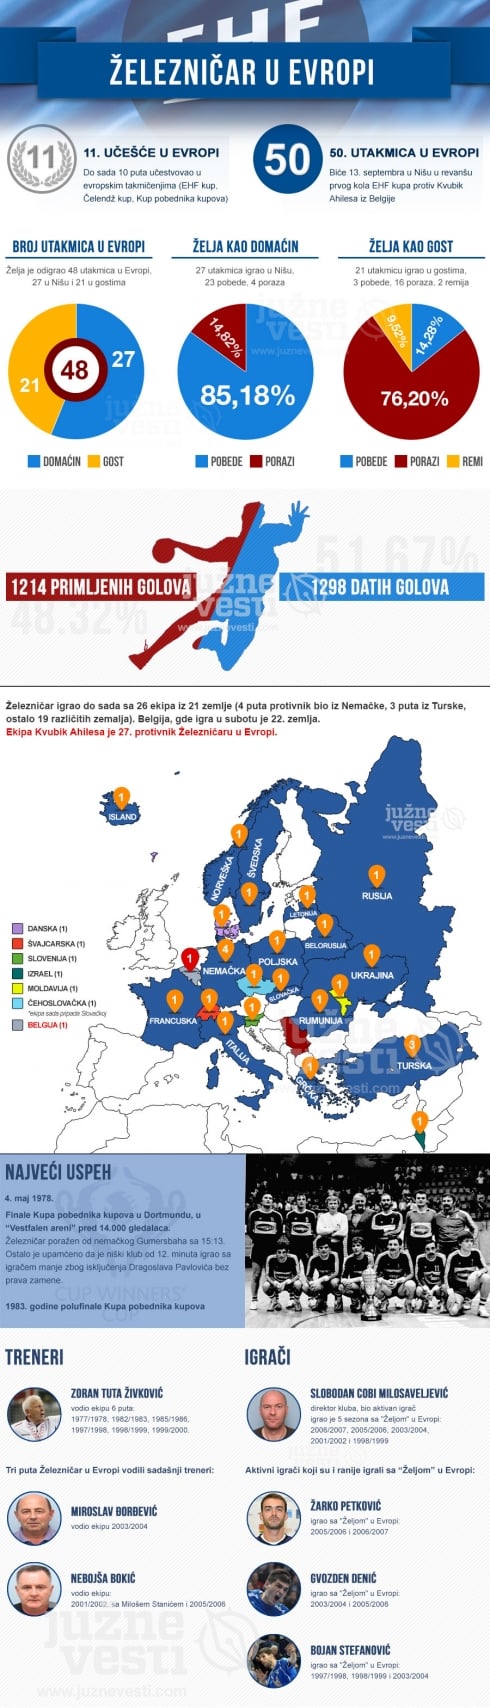 Železničar u Evropi - infografik